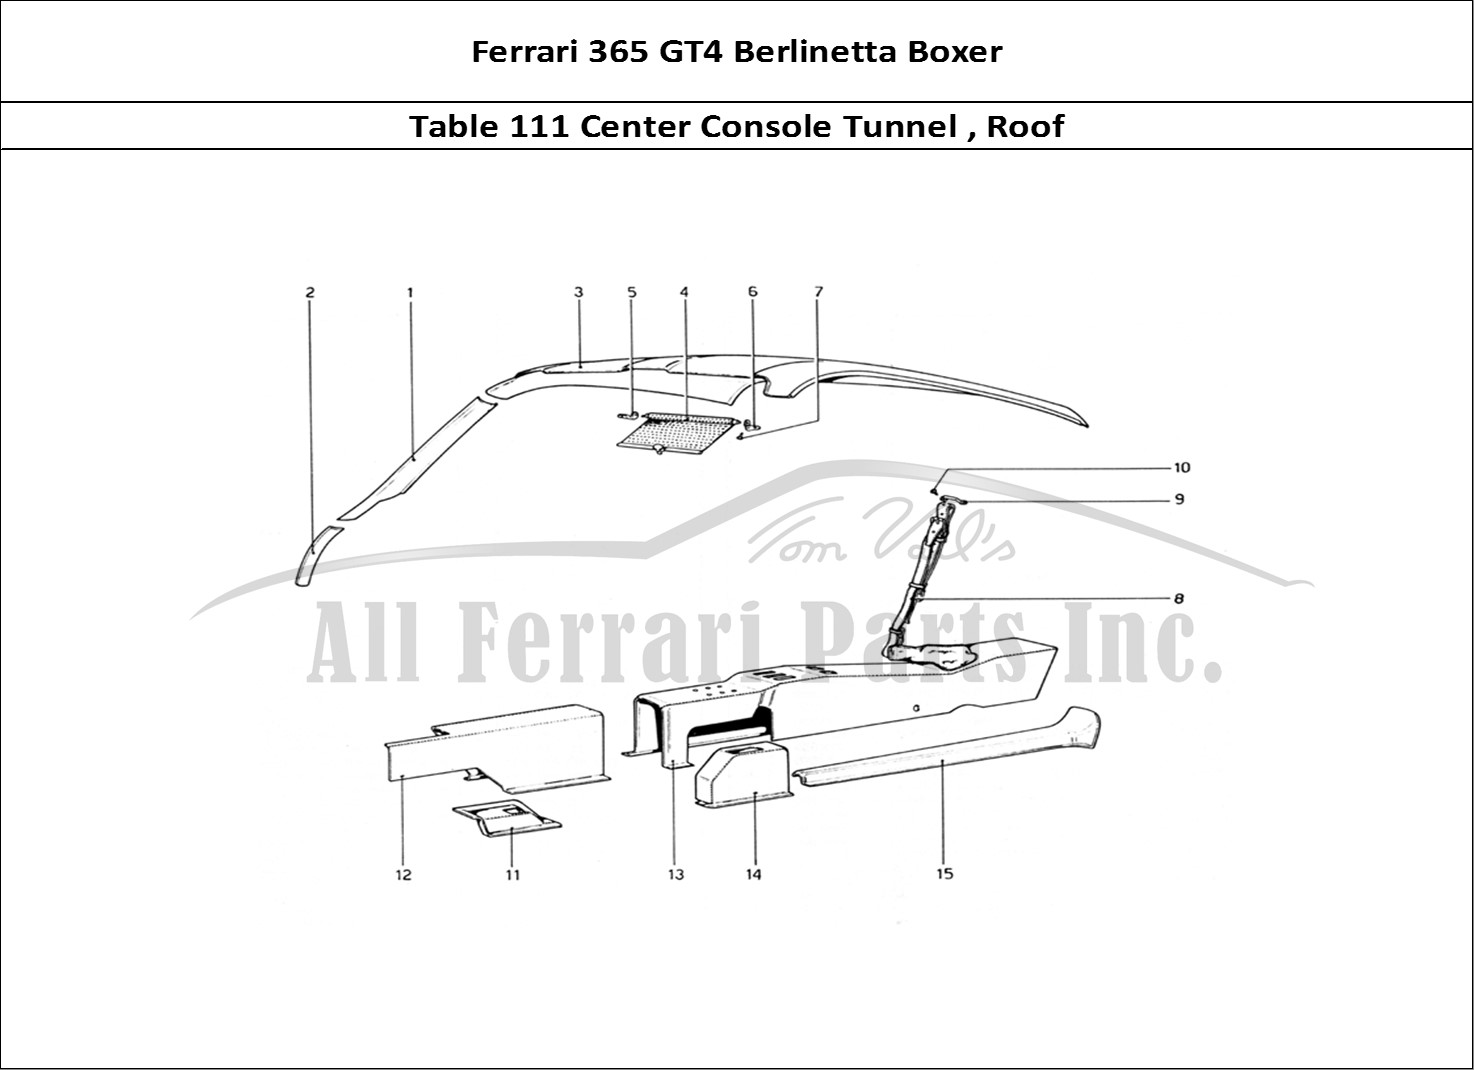 Ferrari Parts Ferrari 365 GT4 Berlinetta Boxer Page 111 Tunnel and Roof